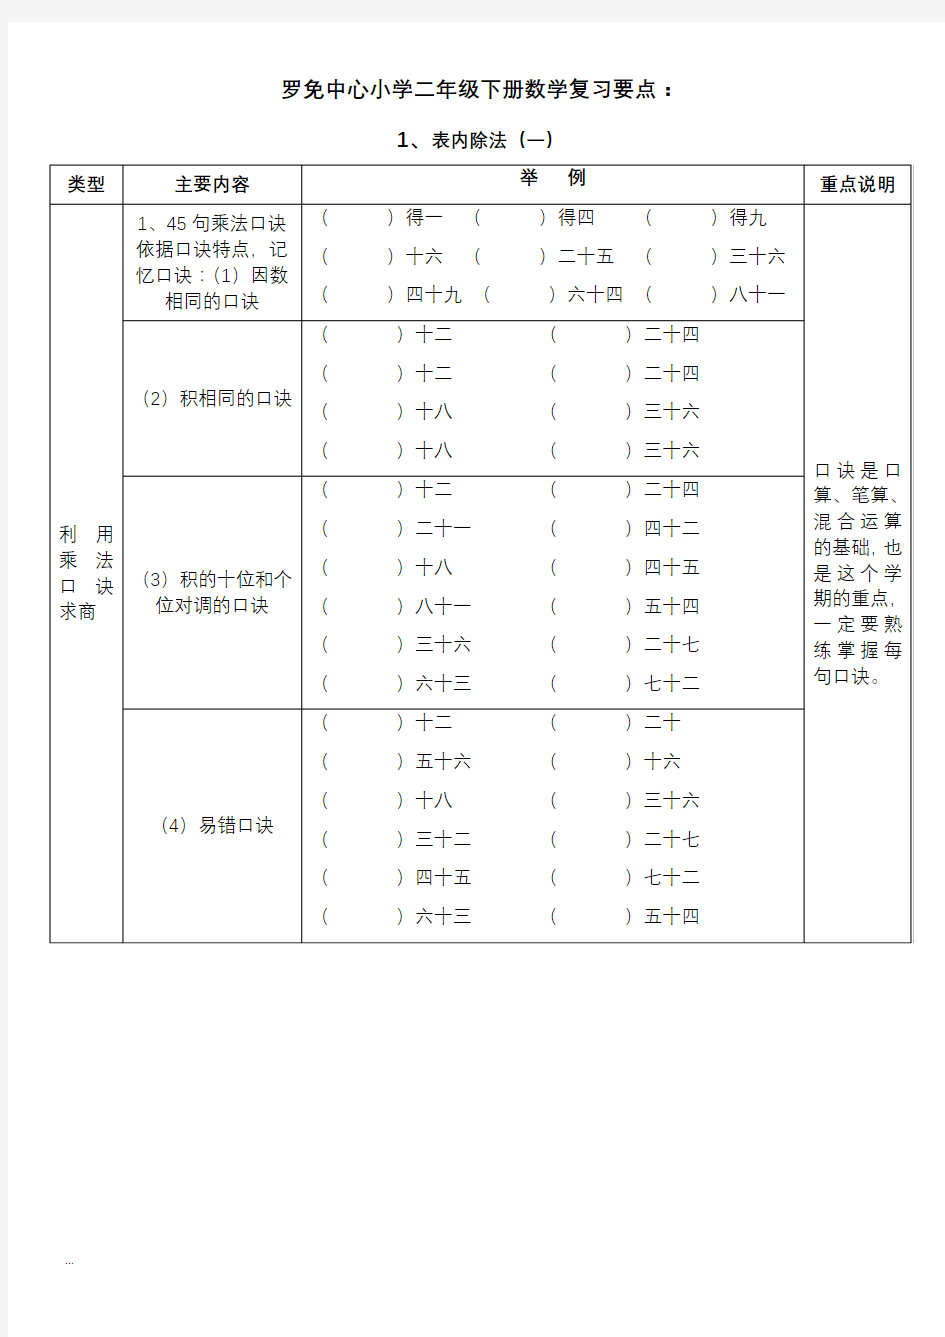 【北京市】小学二年级下册数学练习题